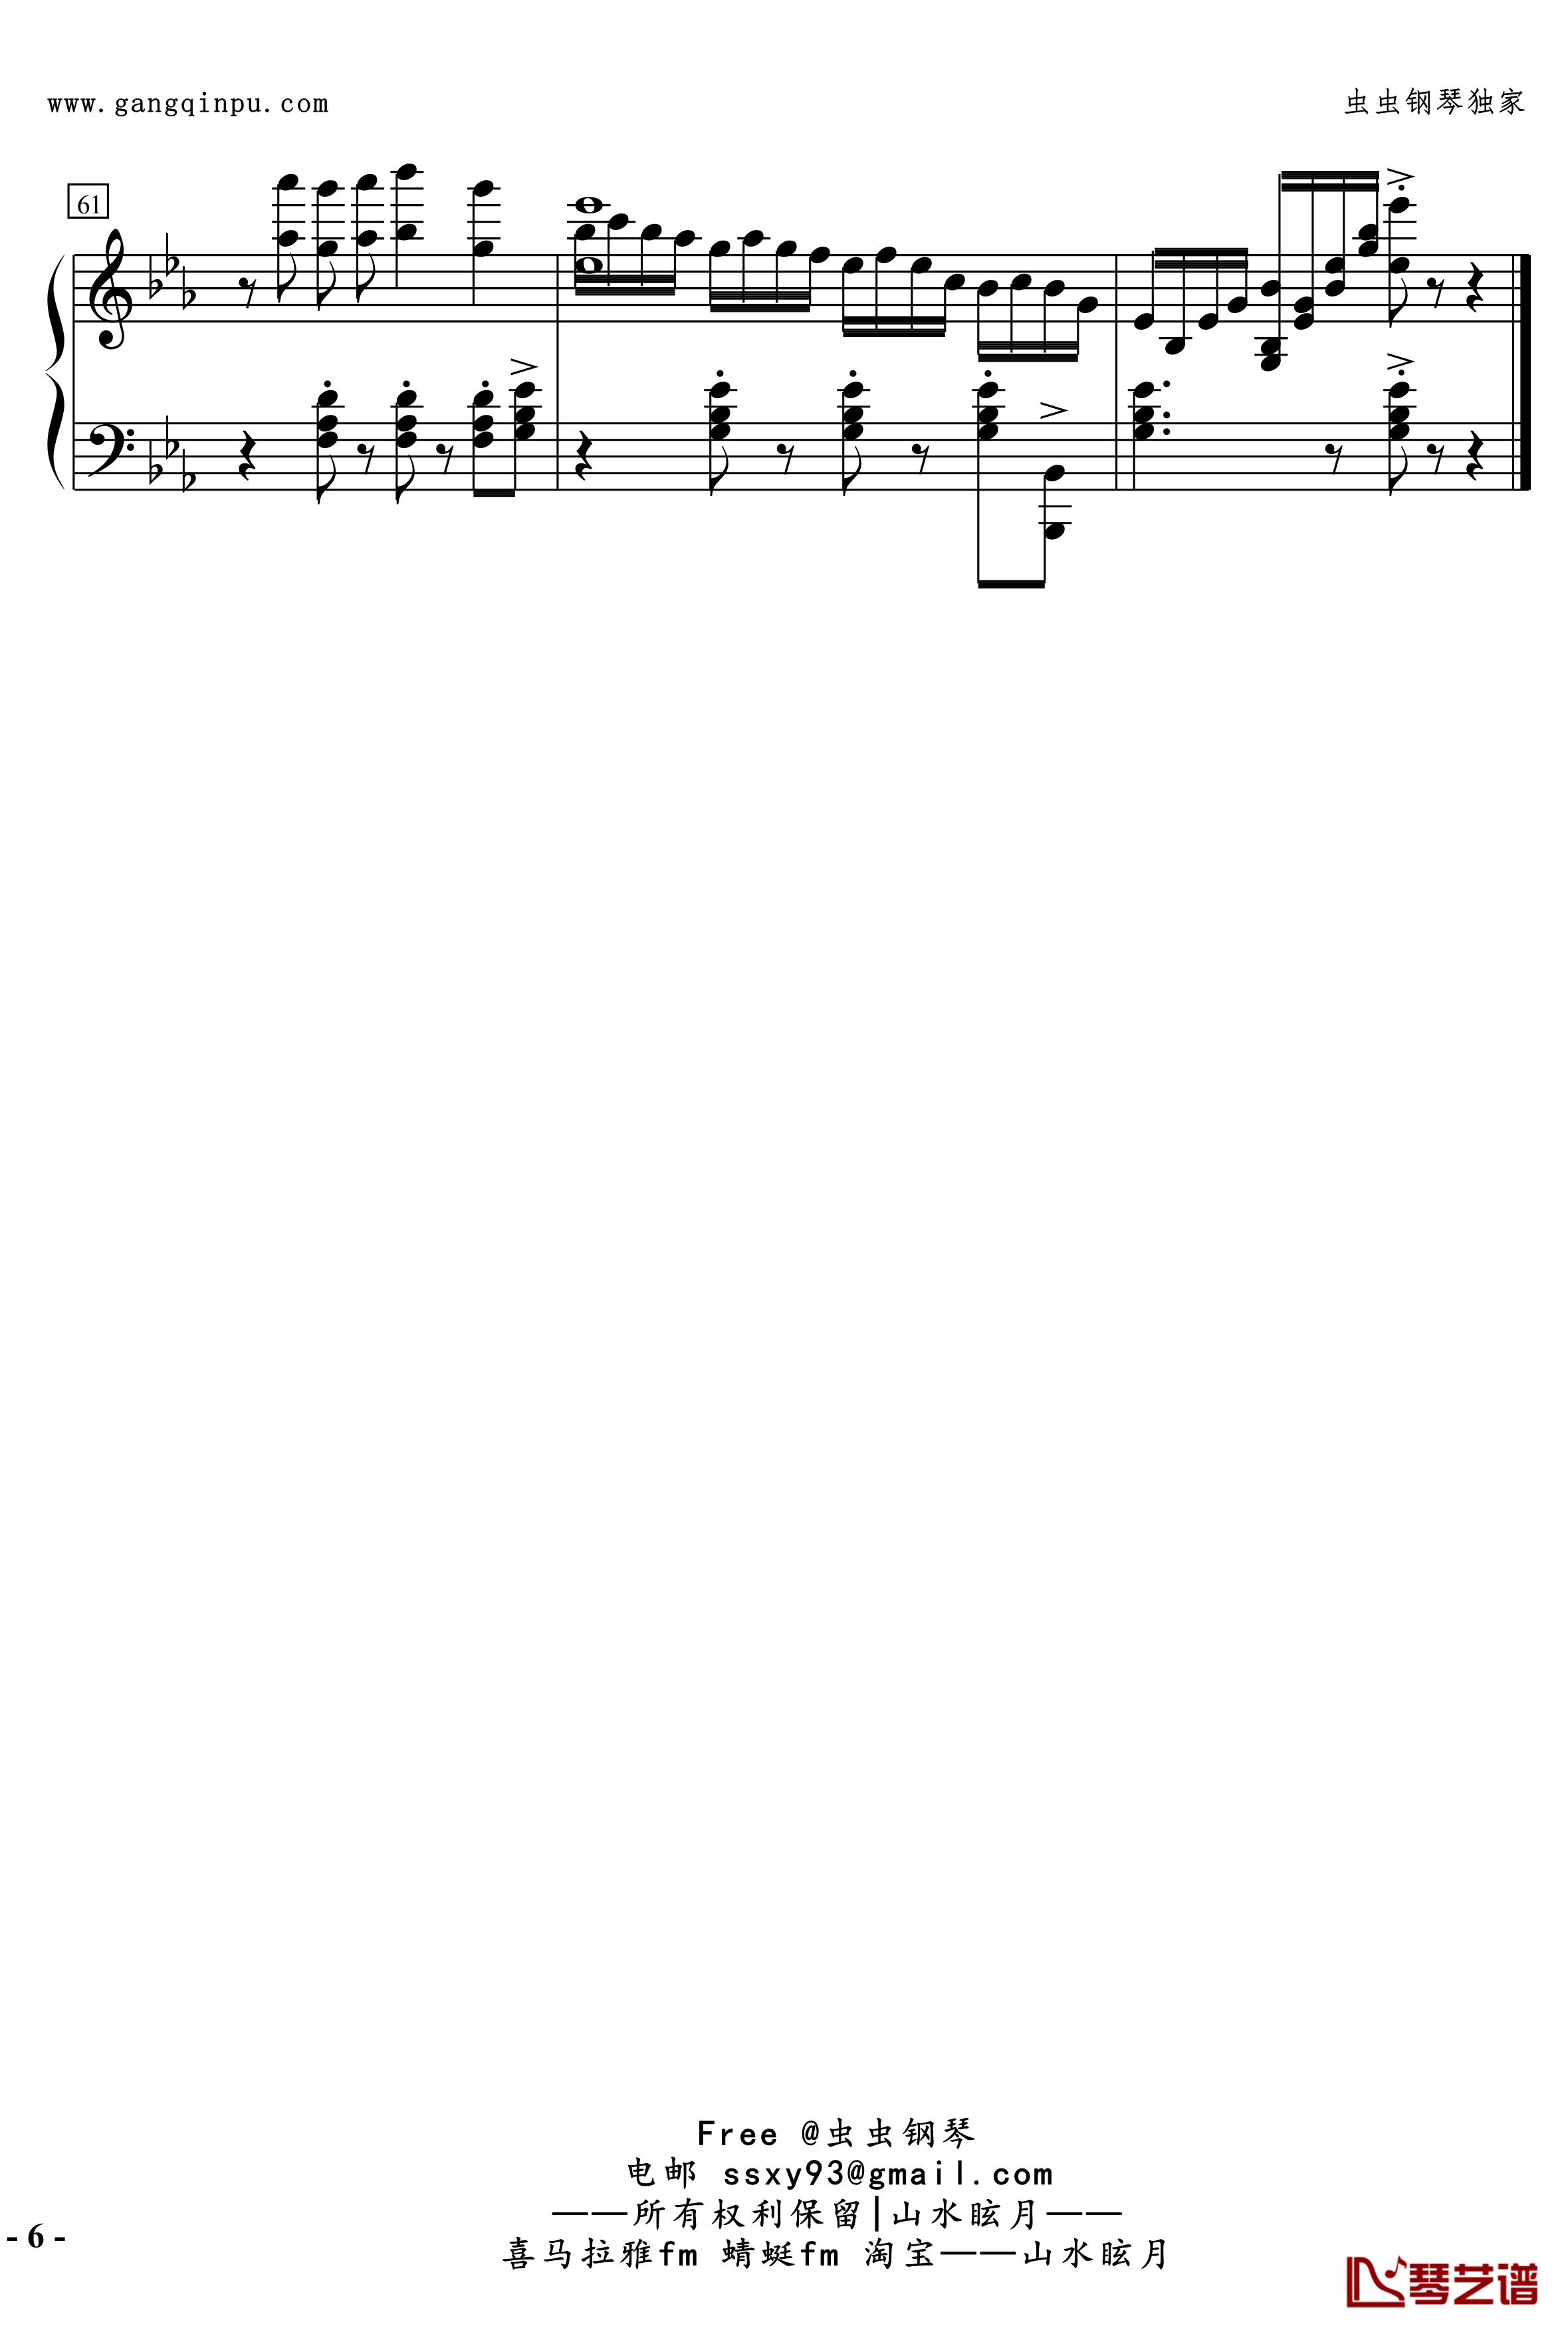 No.2無名探戈钢琴谱-修订-jerry57436